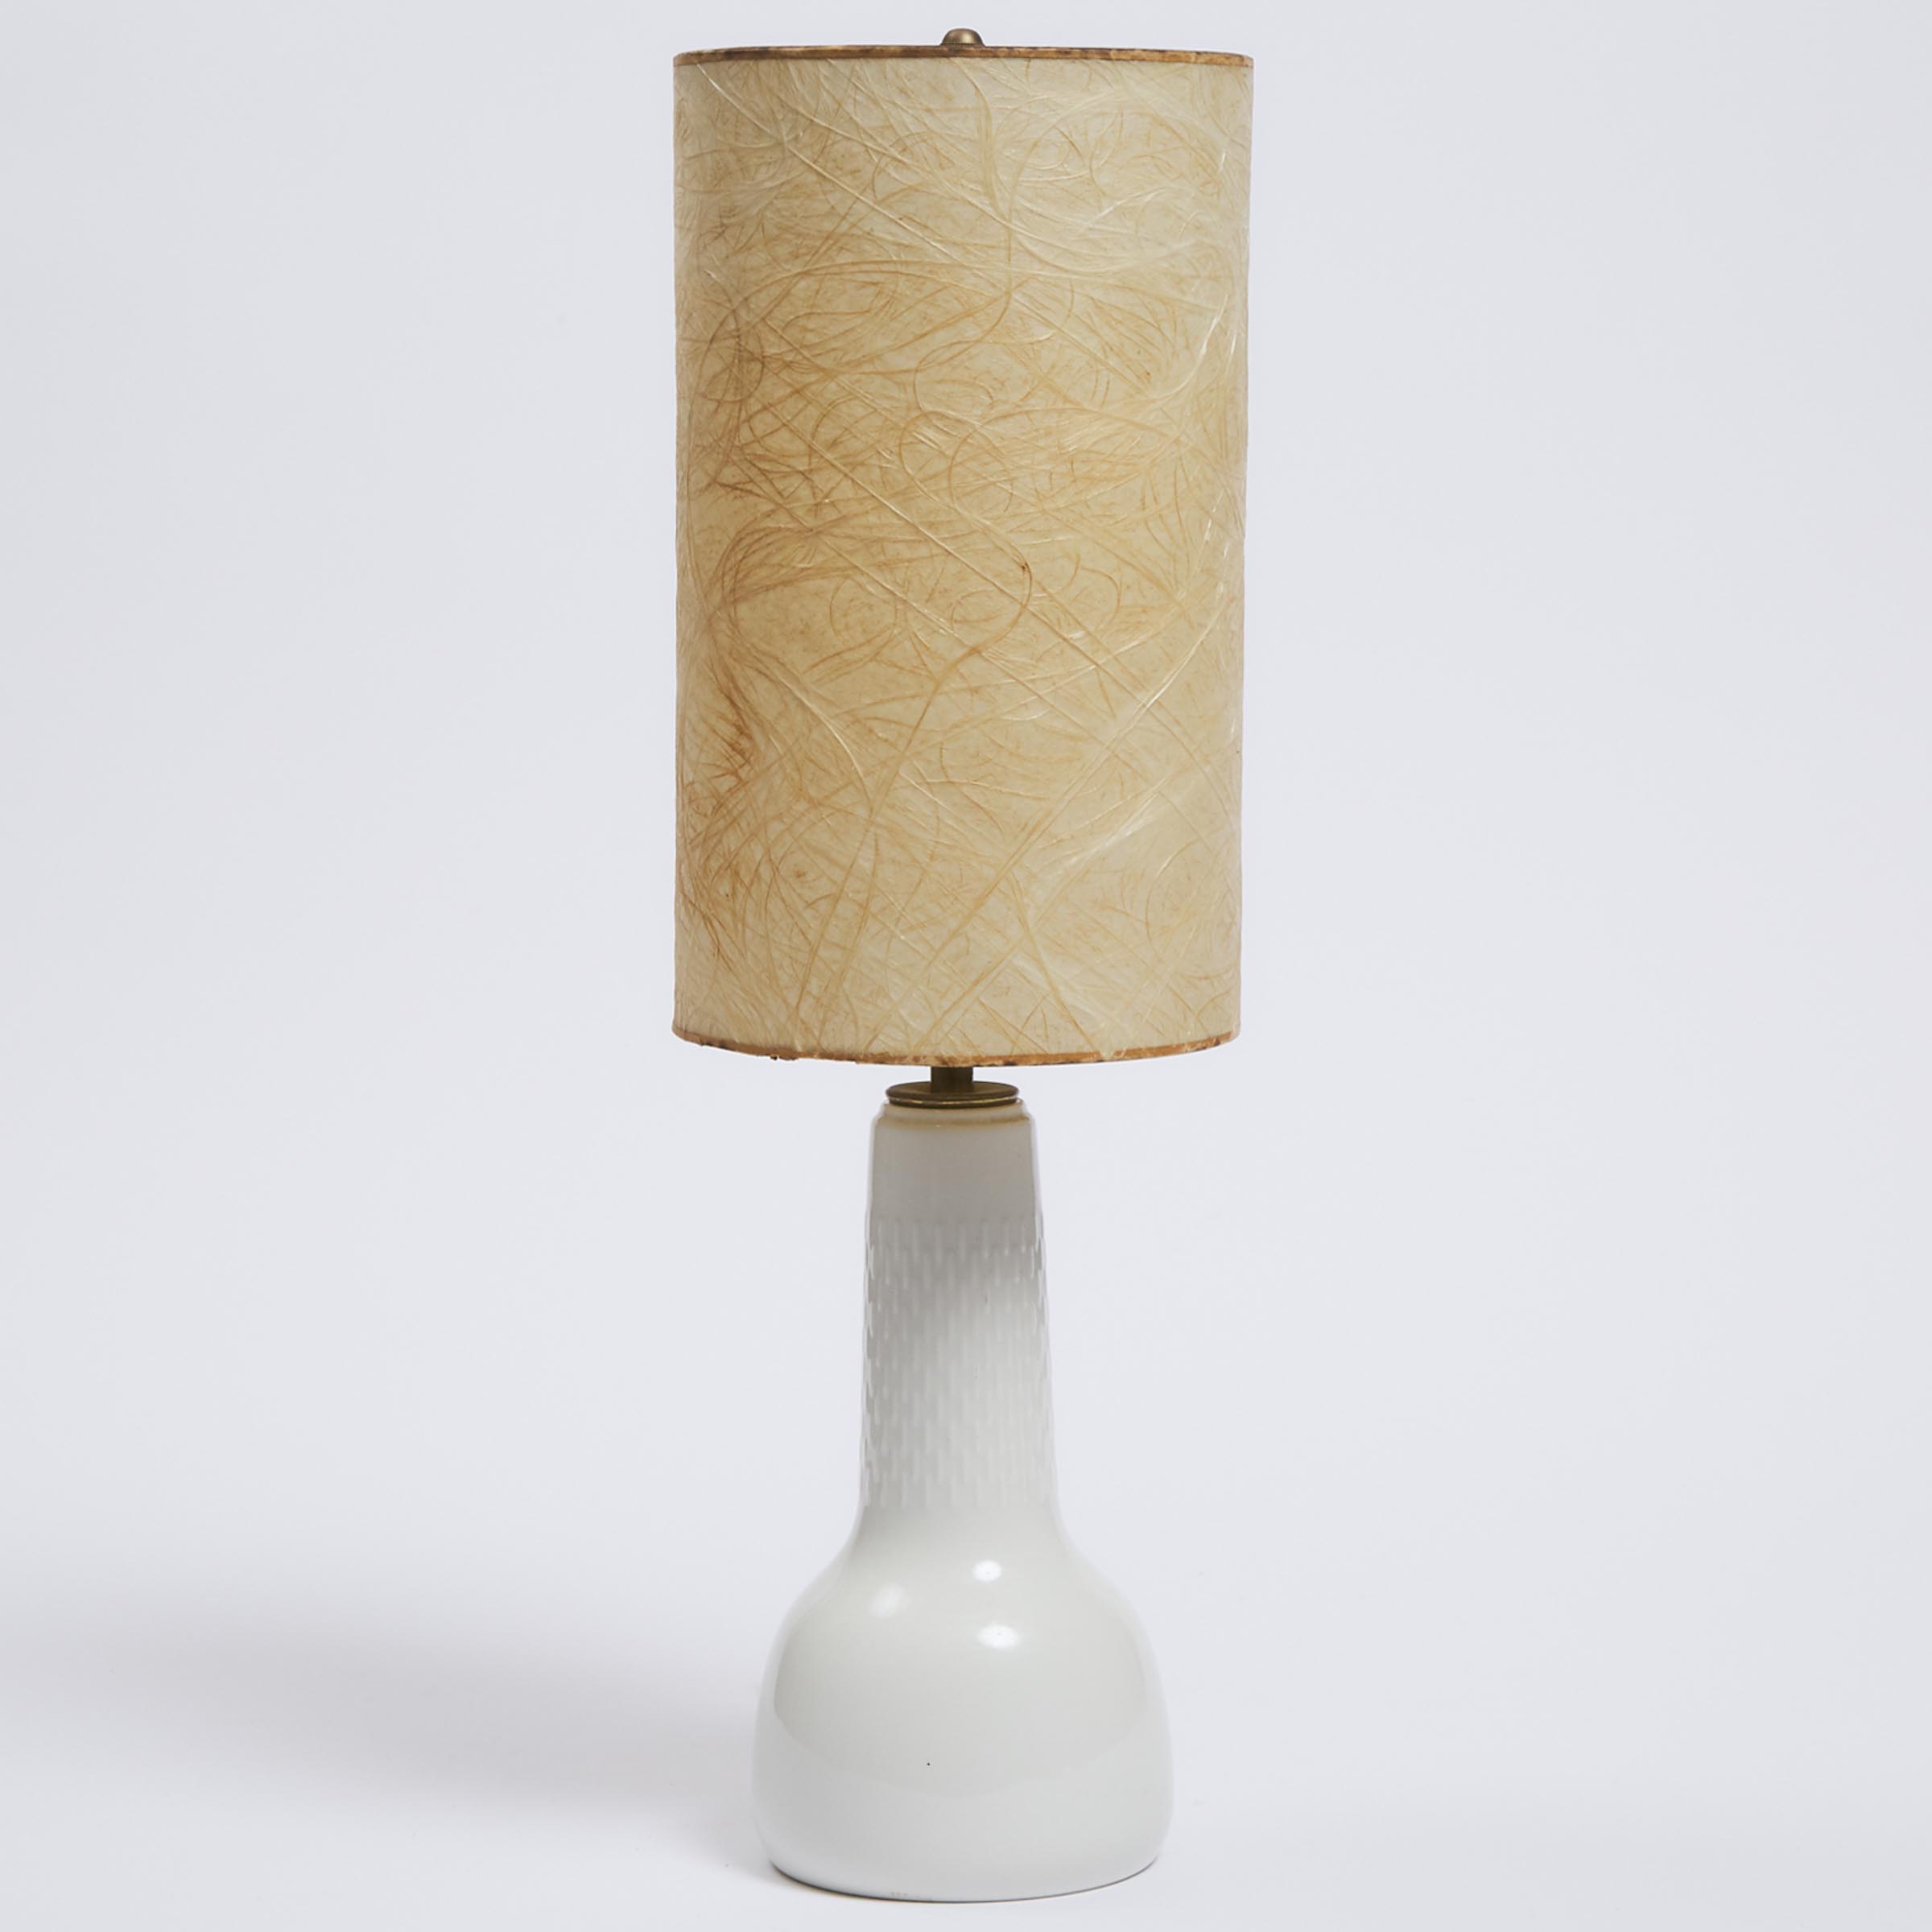 Royal Copenhagen White Glazed Table Lamp, Torkil Olsen for Le Klint, 1980s